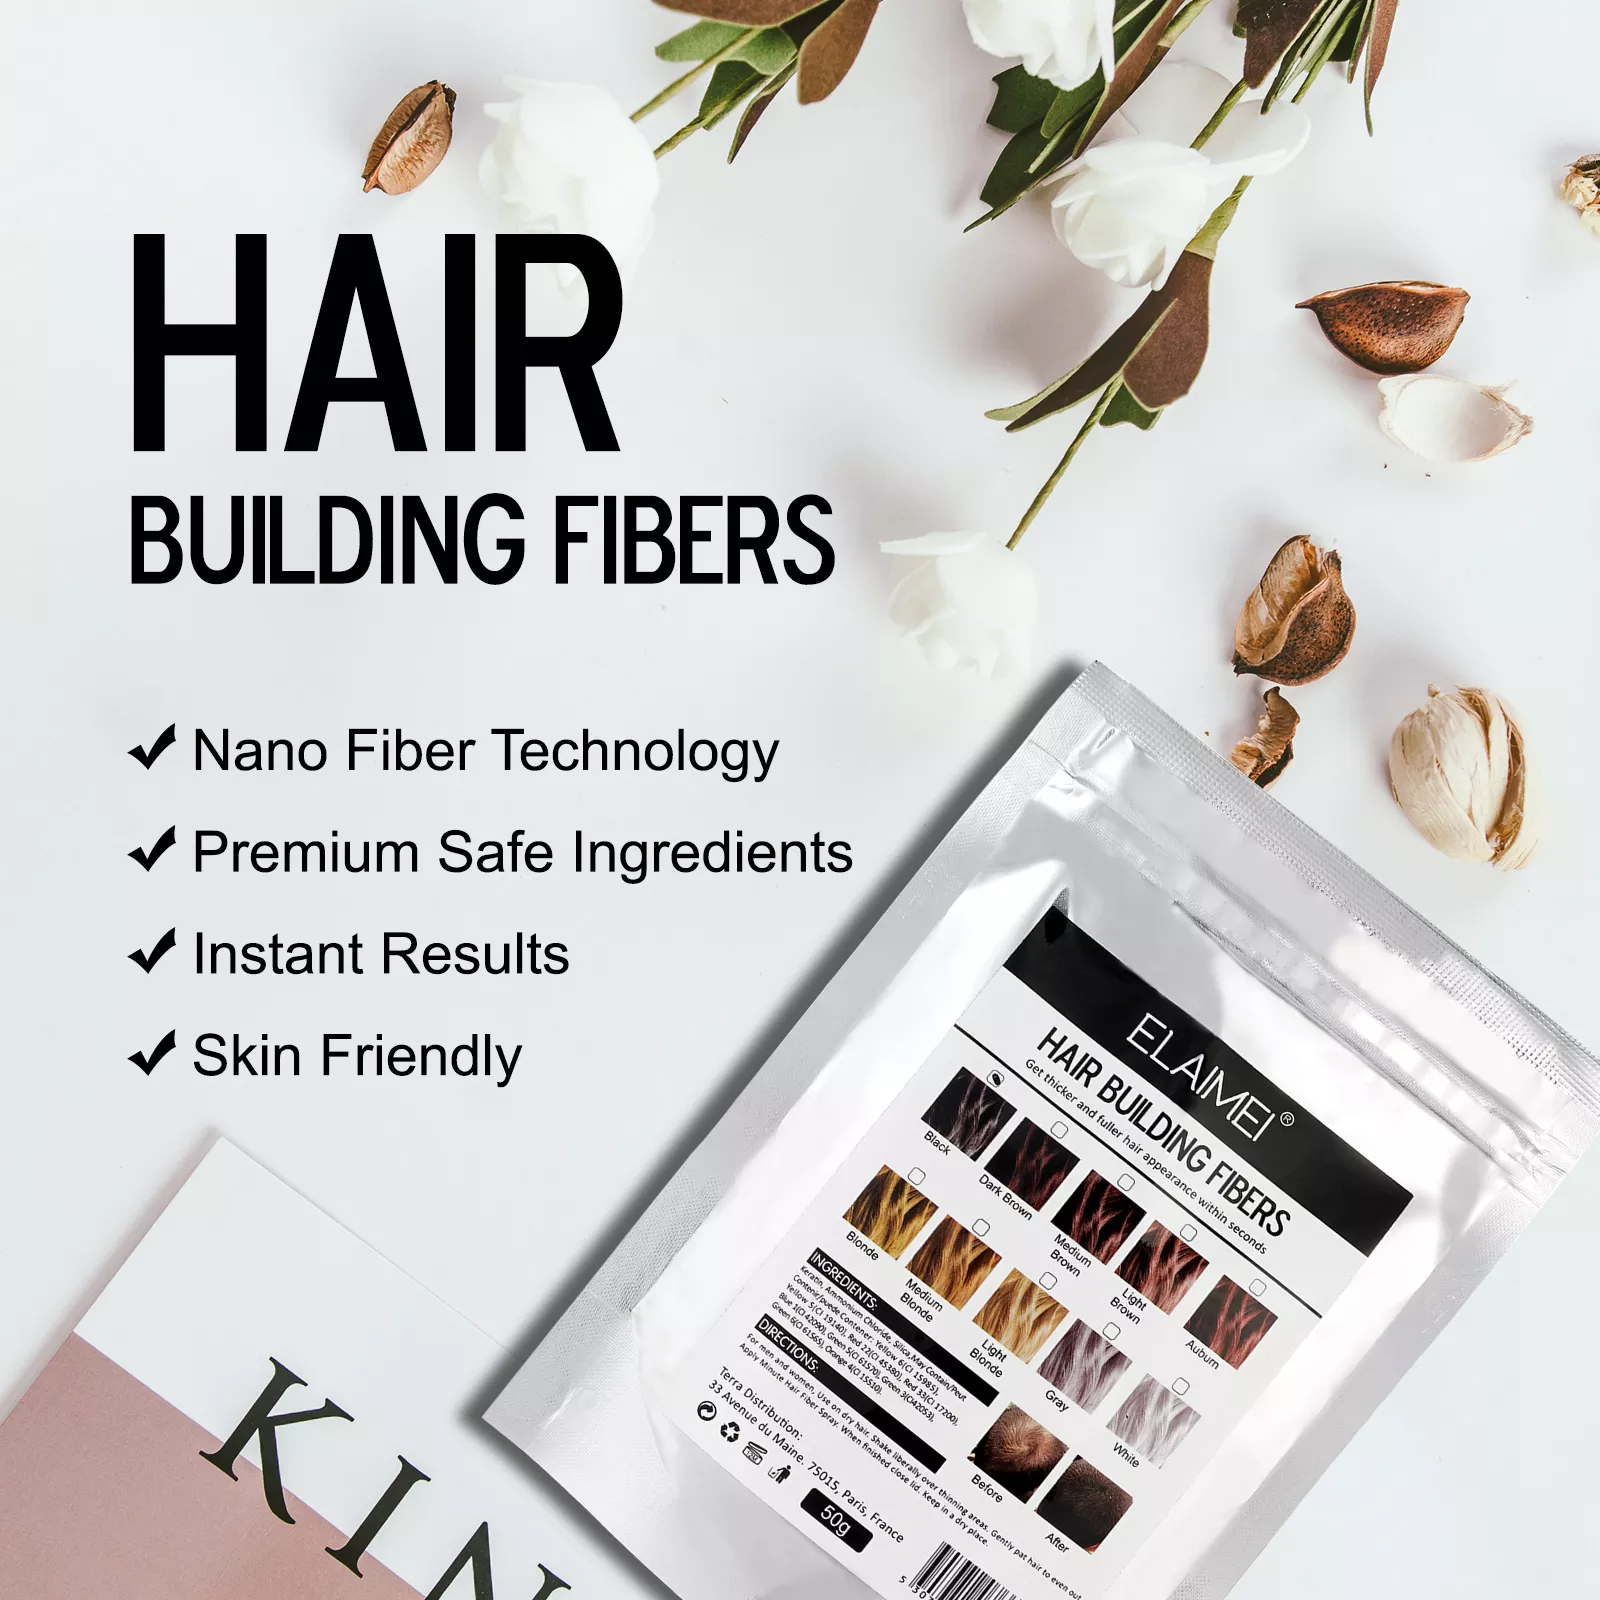 Elaimei Hair Building Fibers, 100g (Dark Brown)